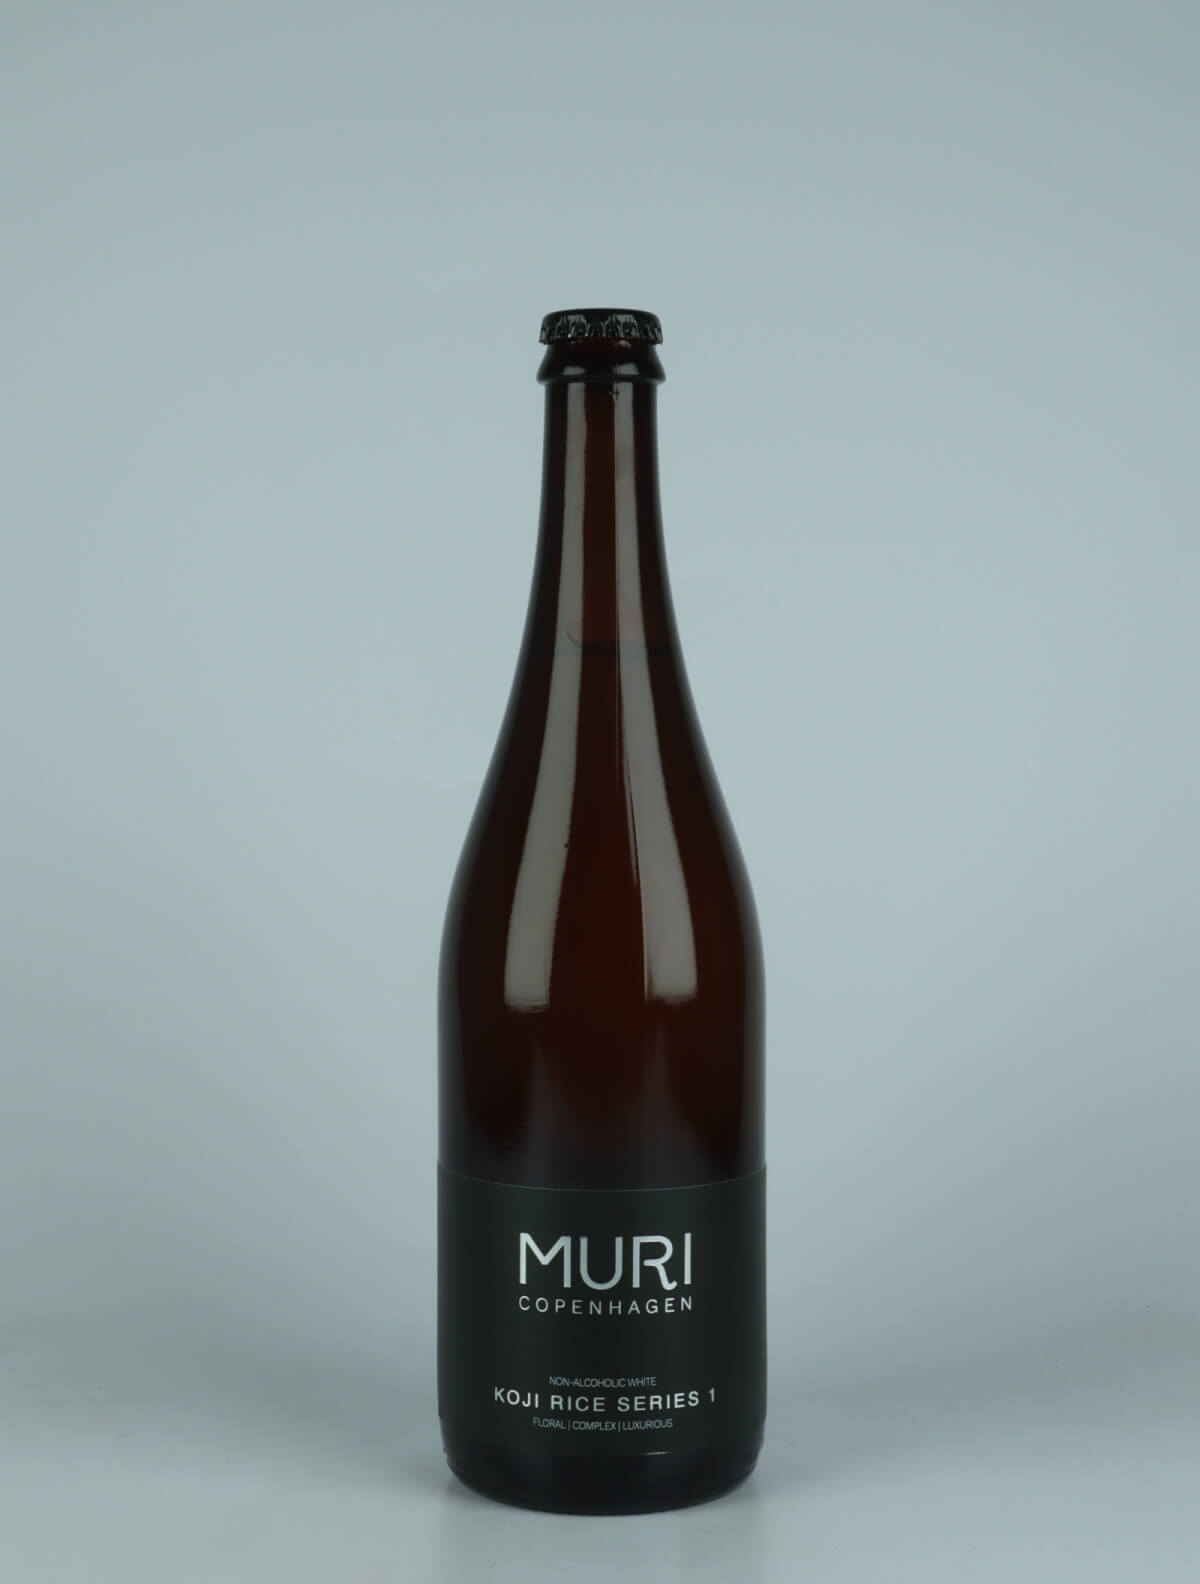 A bottle N.V. Koji Rice Series 1 Non-alcoholic from Muri, Copenhagen in Denmark